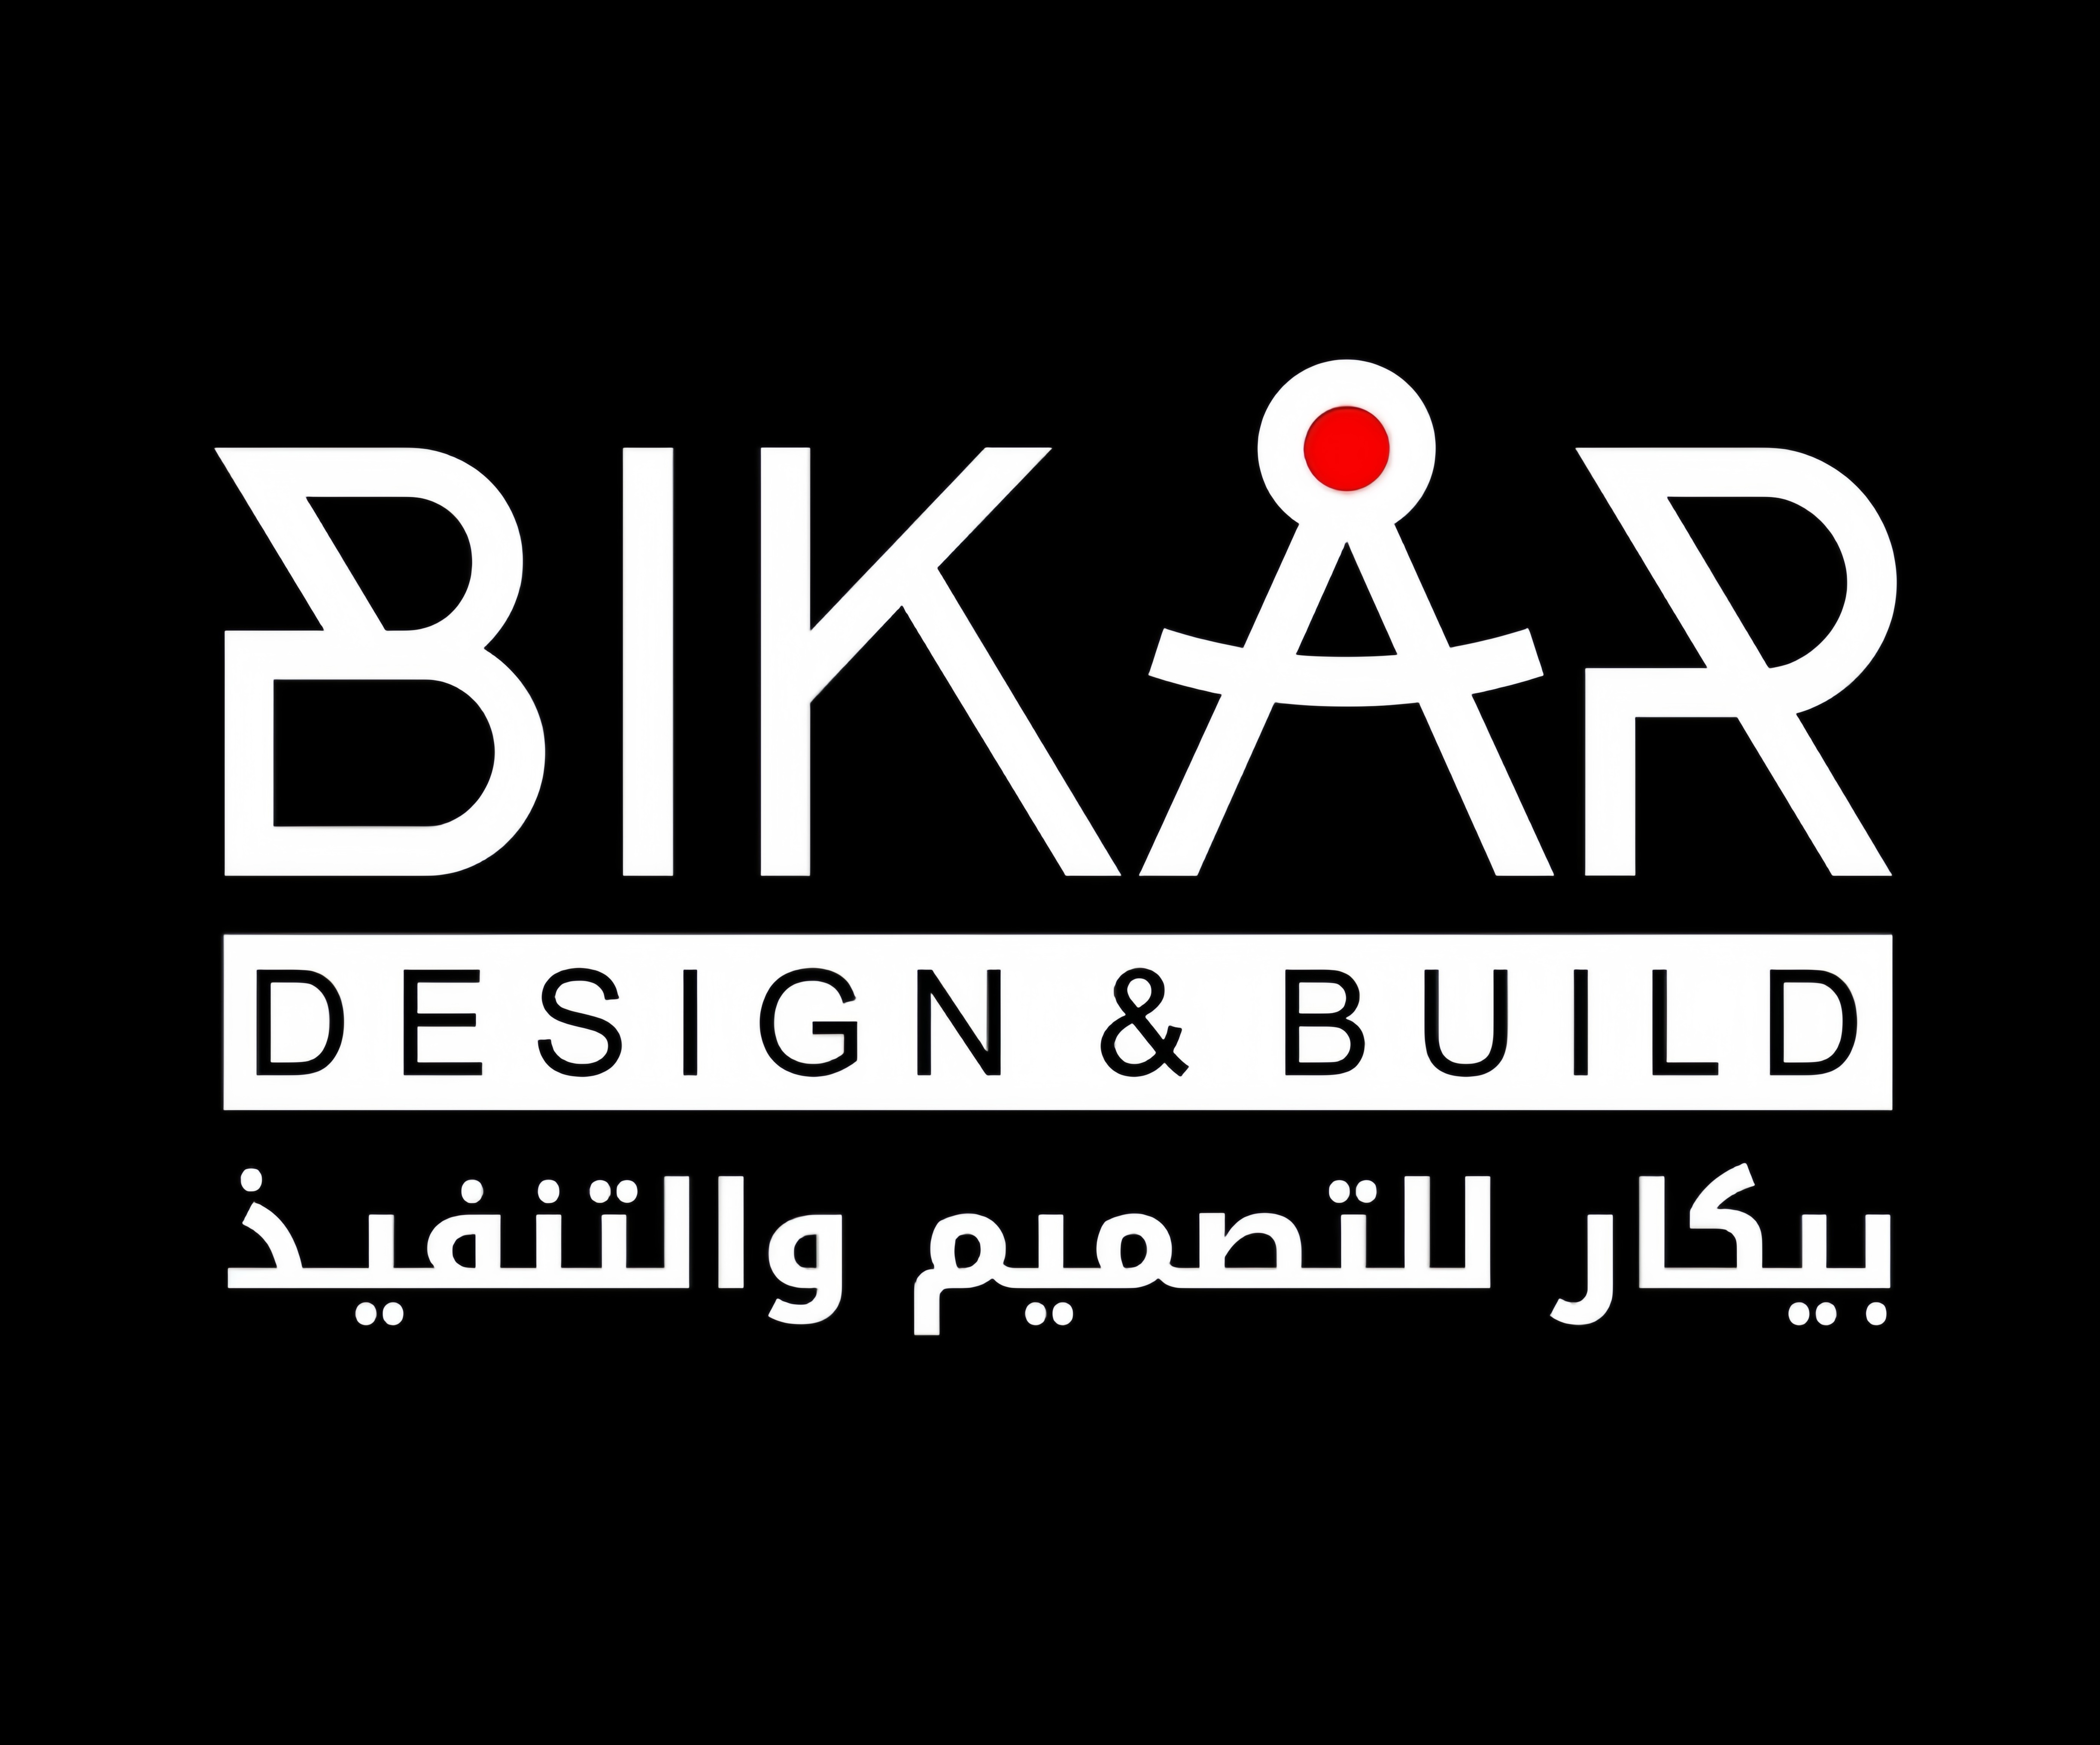 BIKAR Design & Build